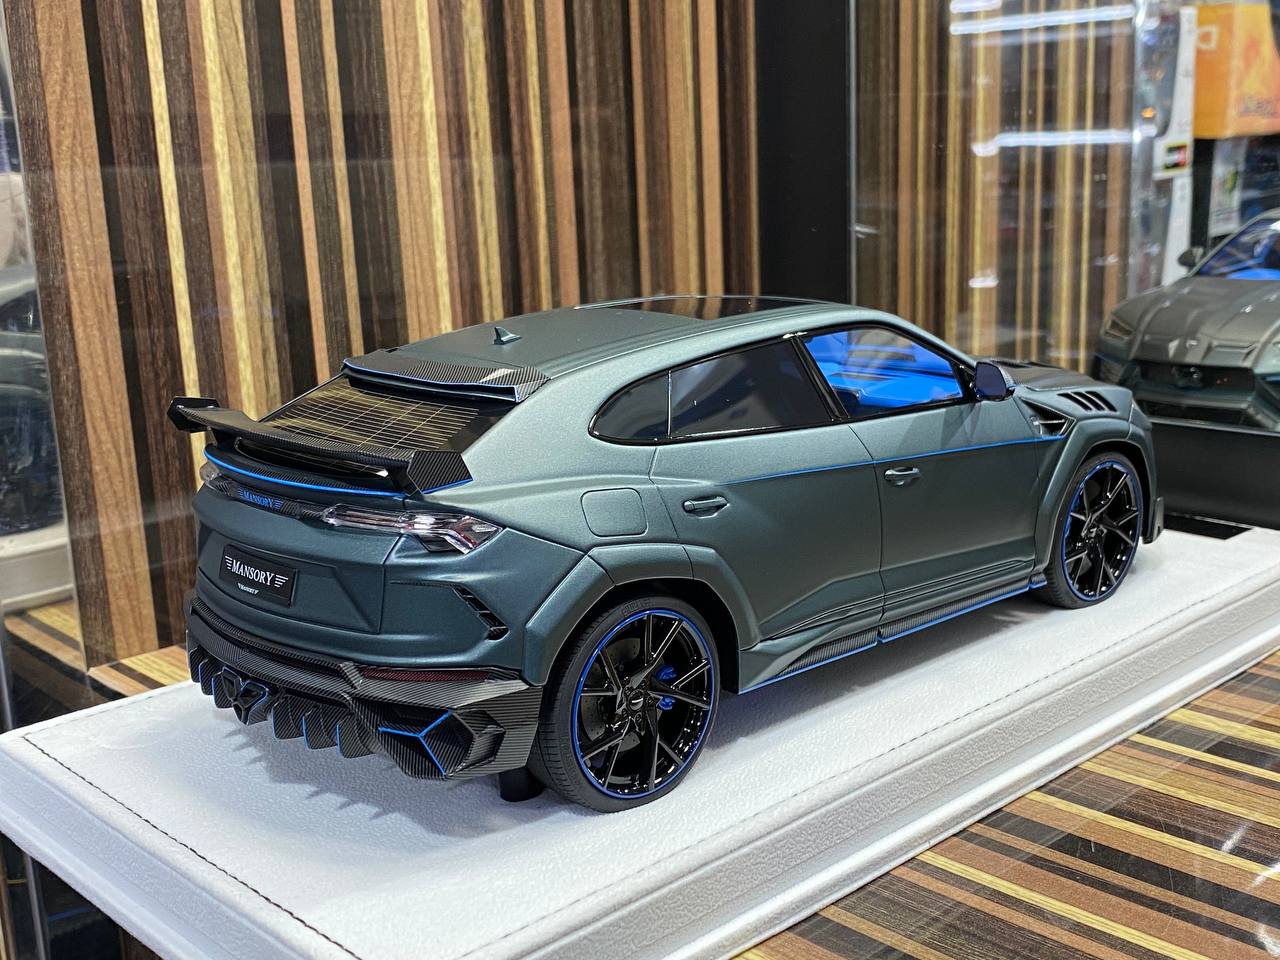 1/18 Diecast Lamborghini Mansory Urus Venatus - Grey Matt Blue Model Car|Sold in Dturman.com Dubai UAE.